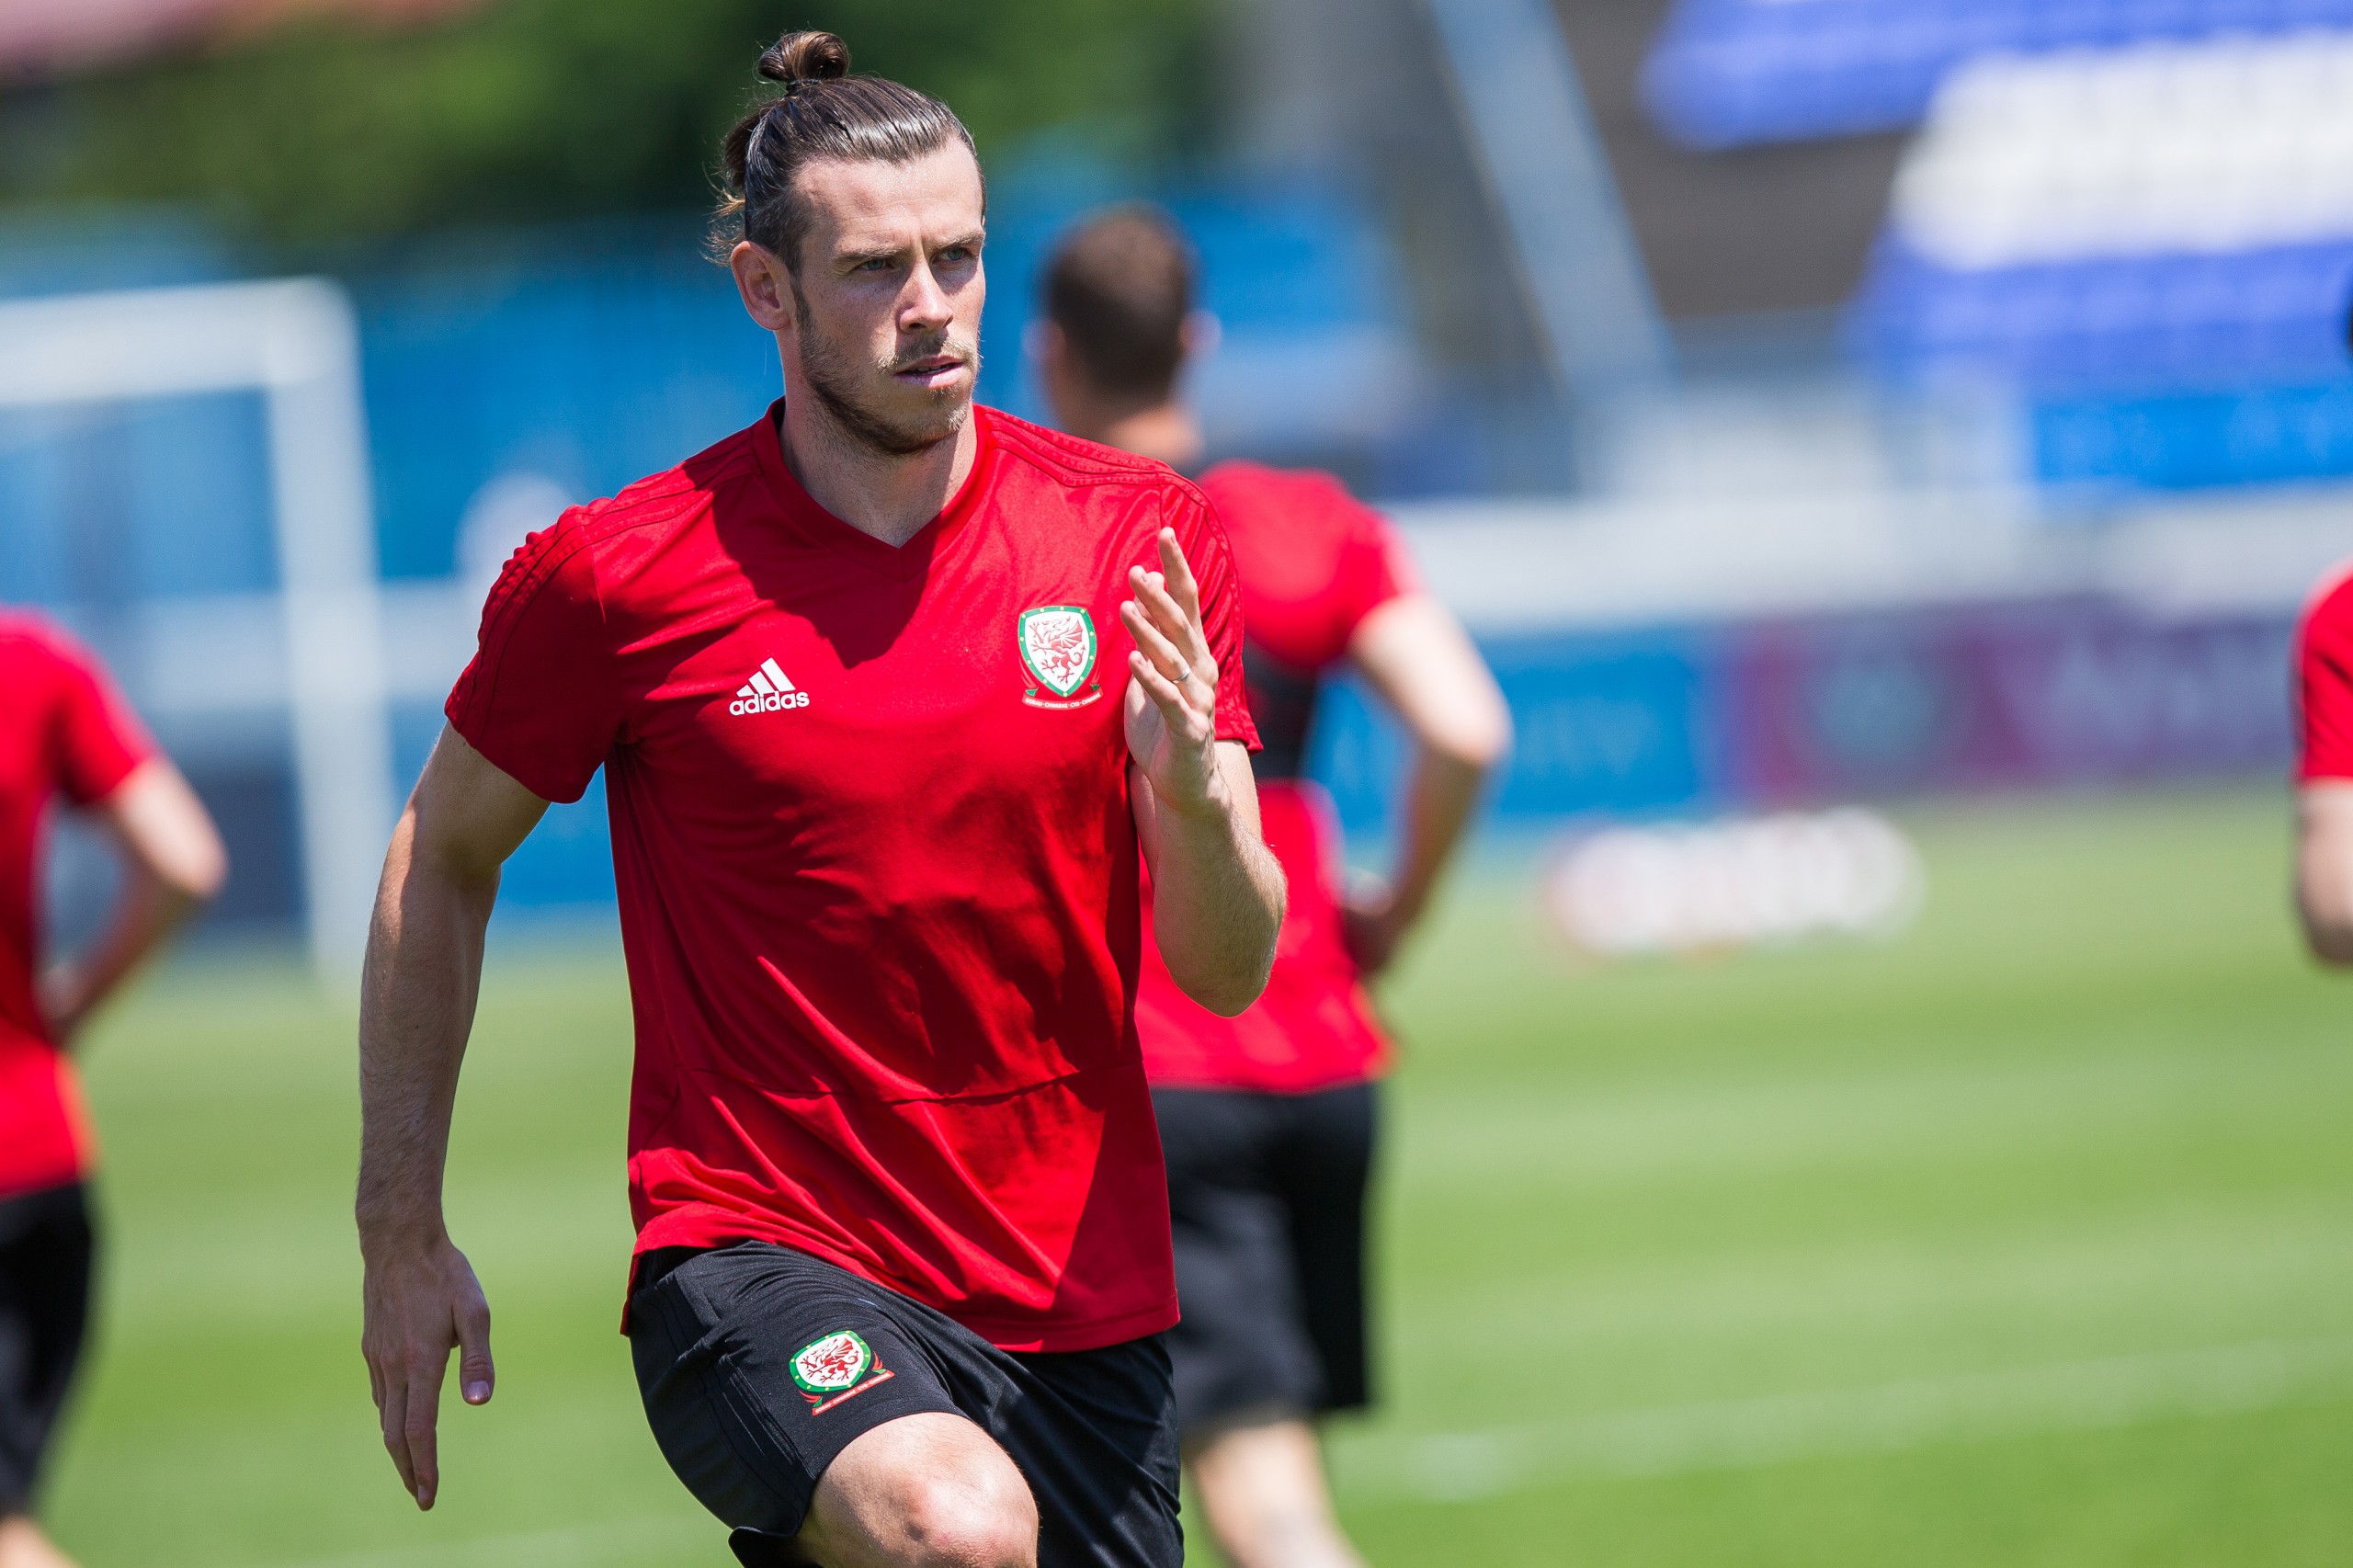 07.06.2019., Stadion Gradski vrt, Osijek - Trening reprtezentacije Walesa. Gareth Bale. "nPhoto: Davor Javorovic/PIXSELL